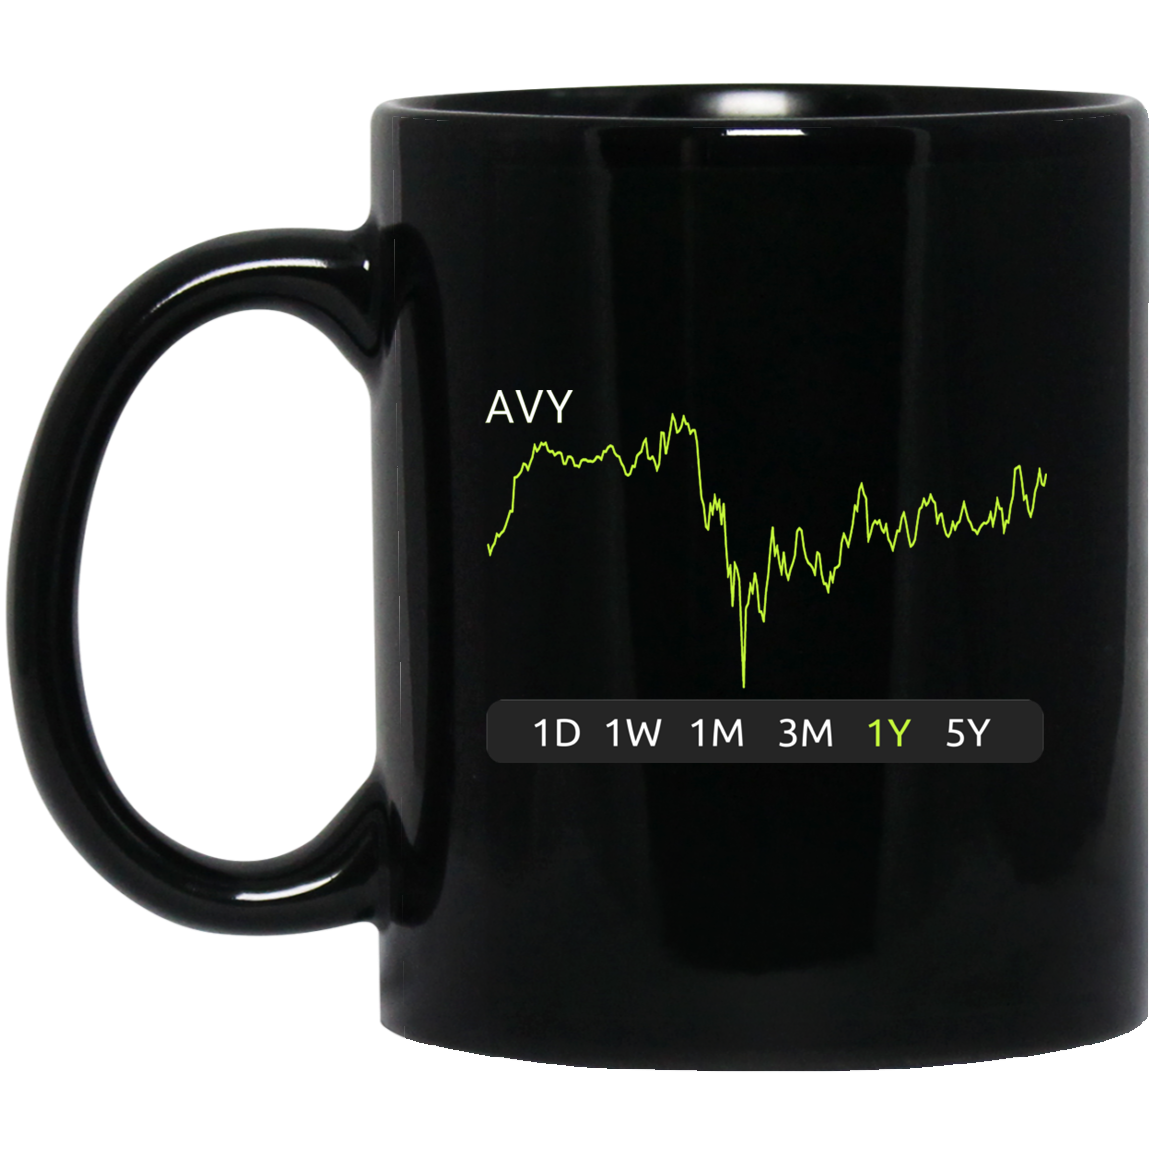 AVY Stock 1y Mug